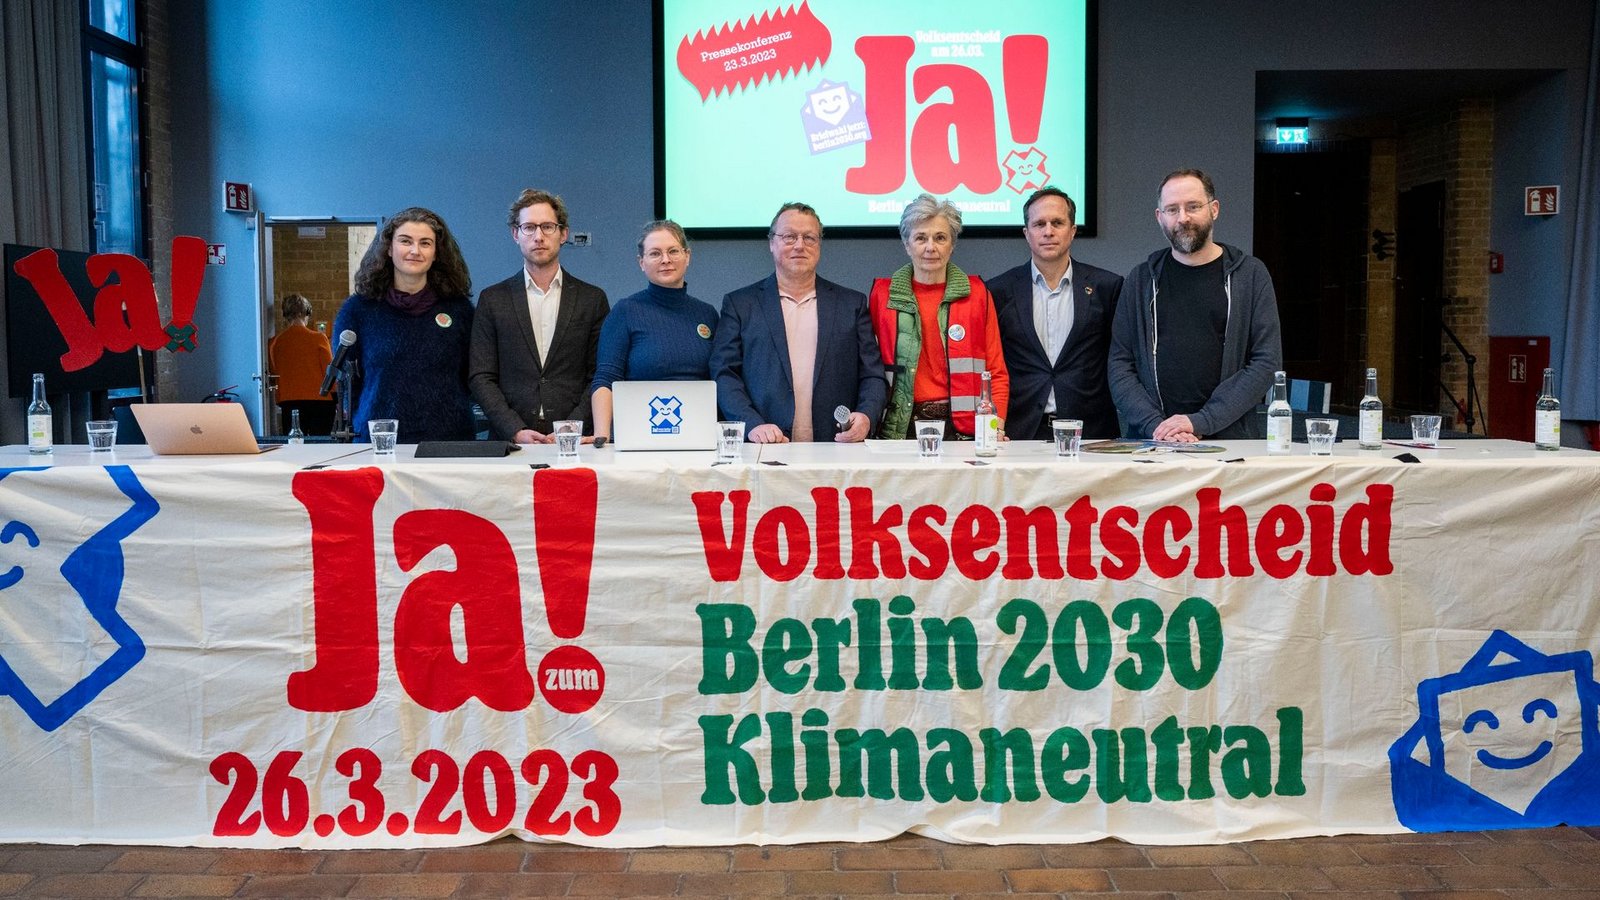 Bei einem Volksentscheid können Berlinerinnen und Berliner darüber abstimmen, ob die Hauptstadt bis 2030 klimaneutral werden soll.Foto: Christophe Gateau/dpa